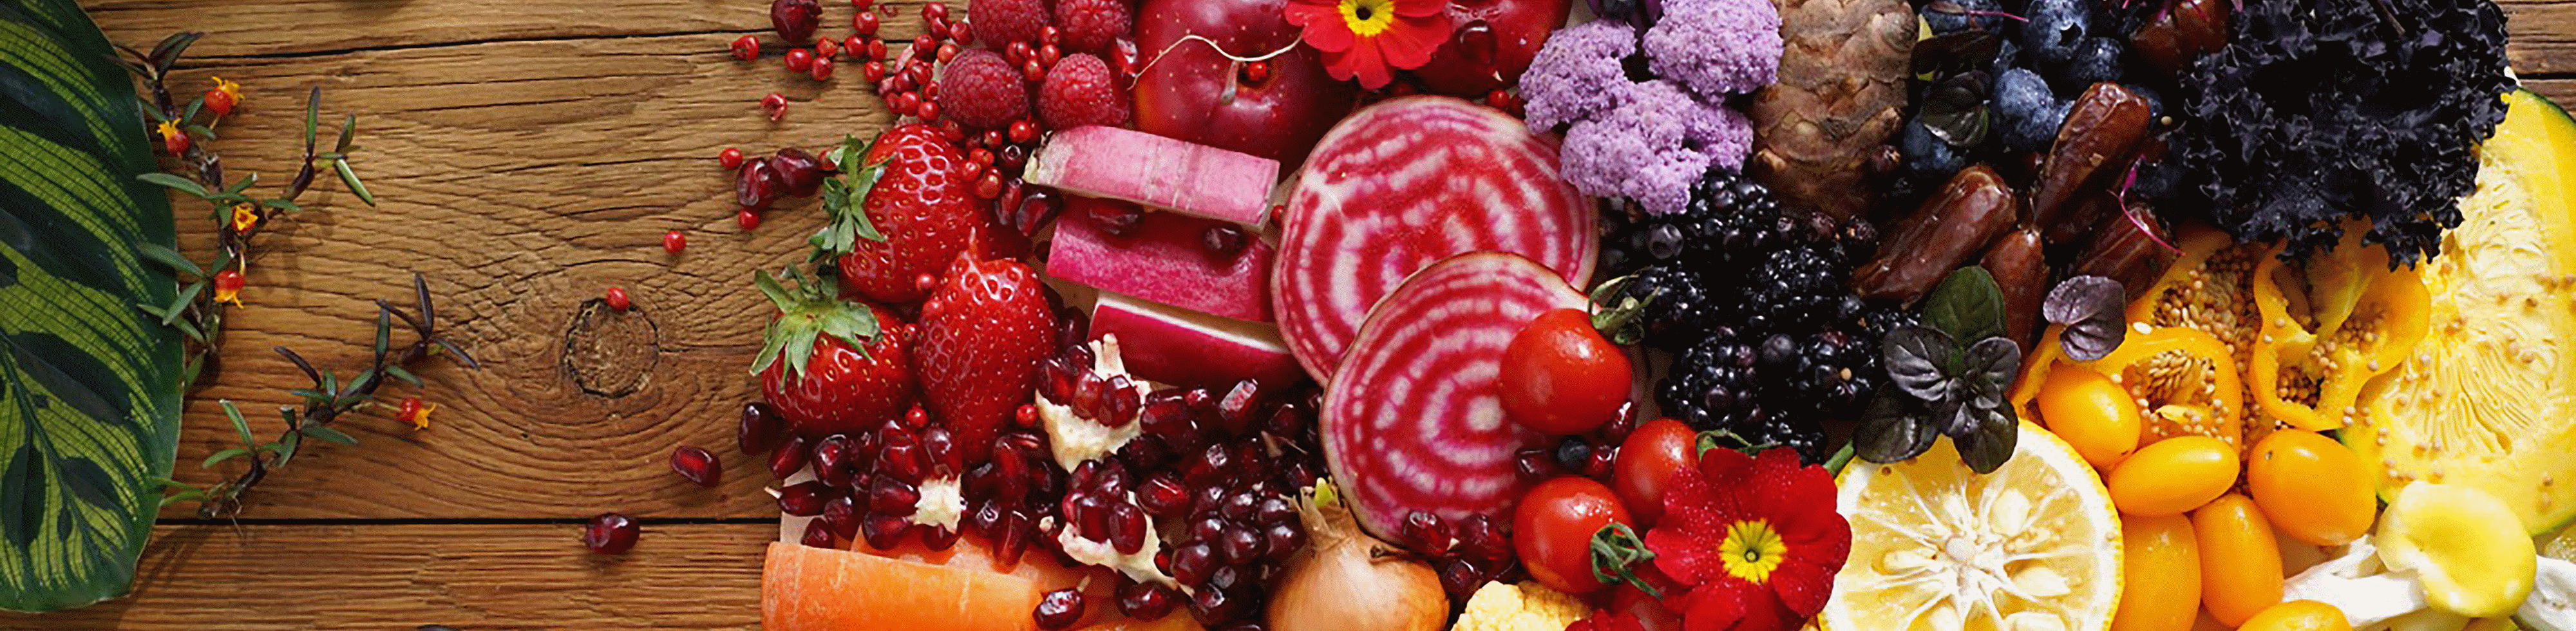 Яркое изображение фруктов и овощей, снятое с помощью этого объектива с высоким разрешением в любой точке